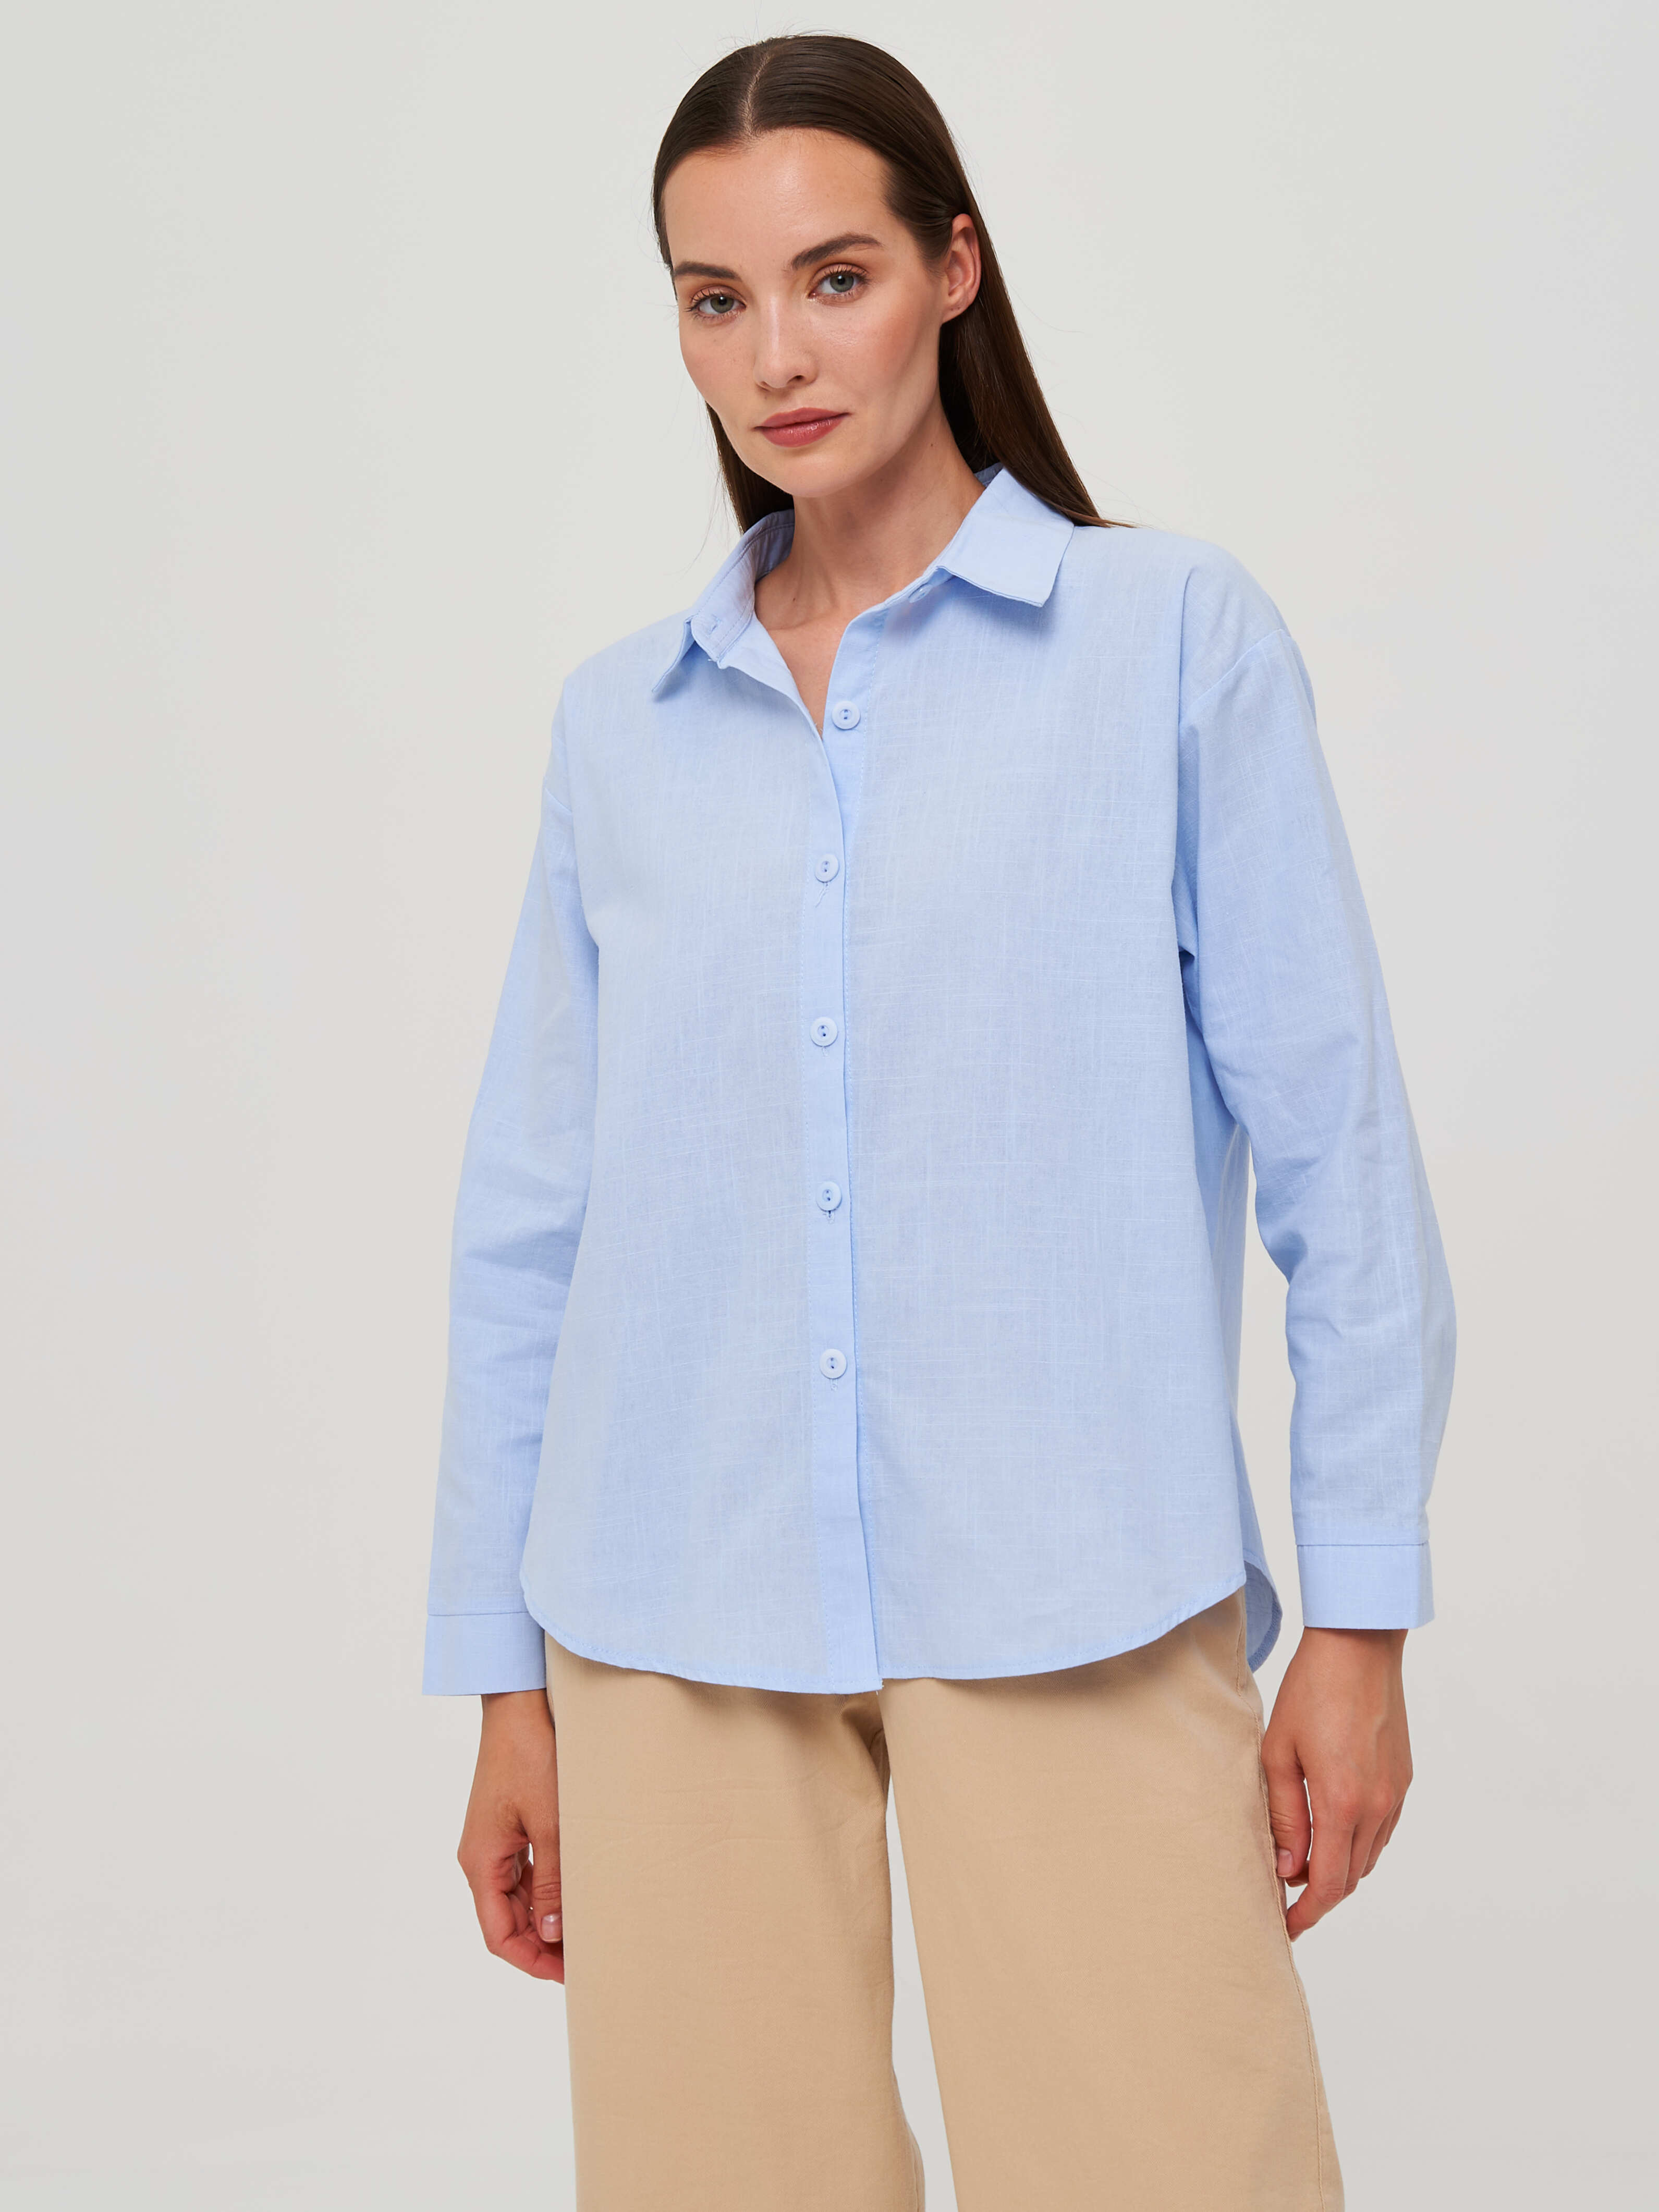 Рубашка женская Каляев 68505 голубая 44 RU